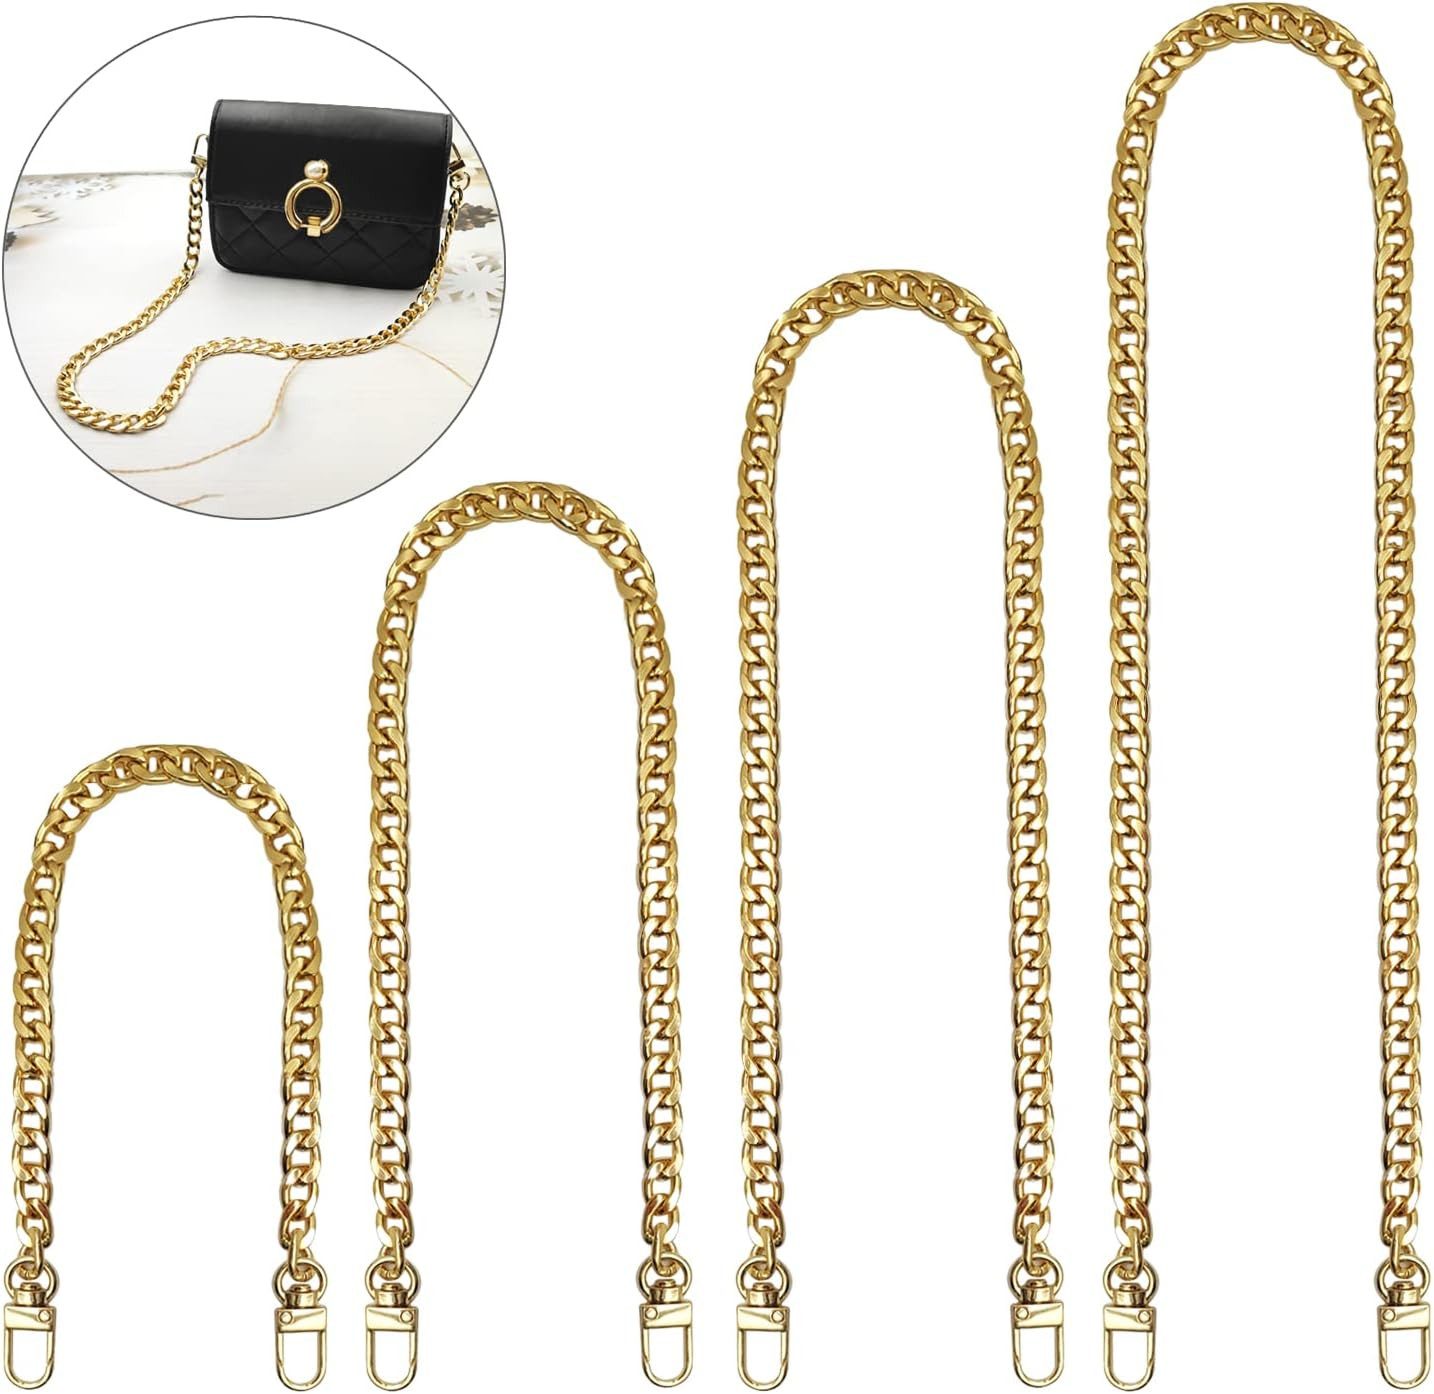 HIBNOPN Schulterriemen Taschenkette, 4 Stück Gold Metall Flacher Kette für Handtasche Clutch